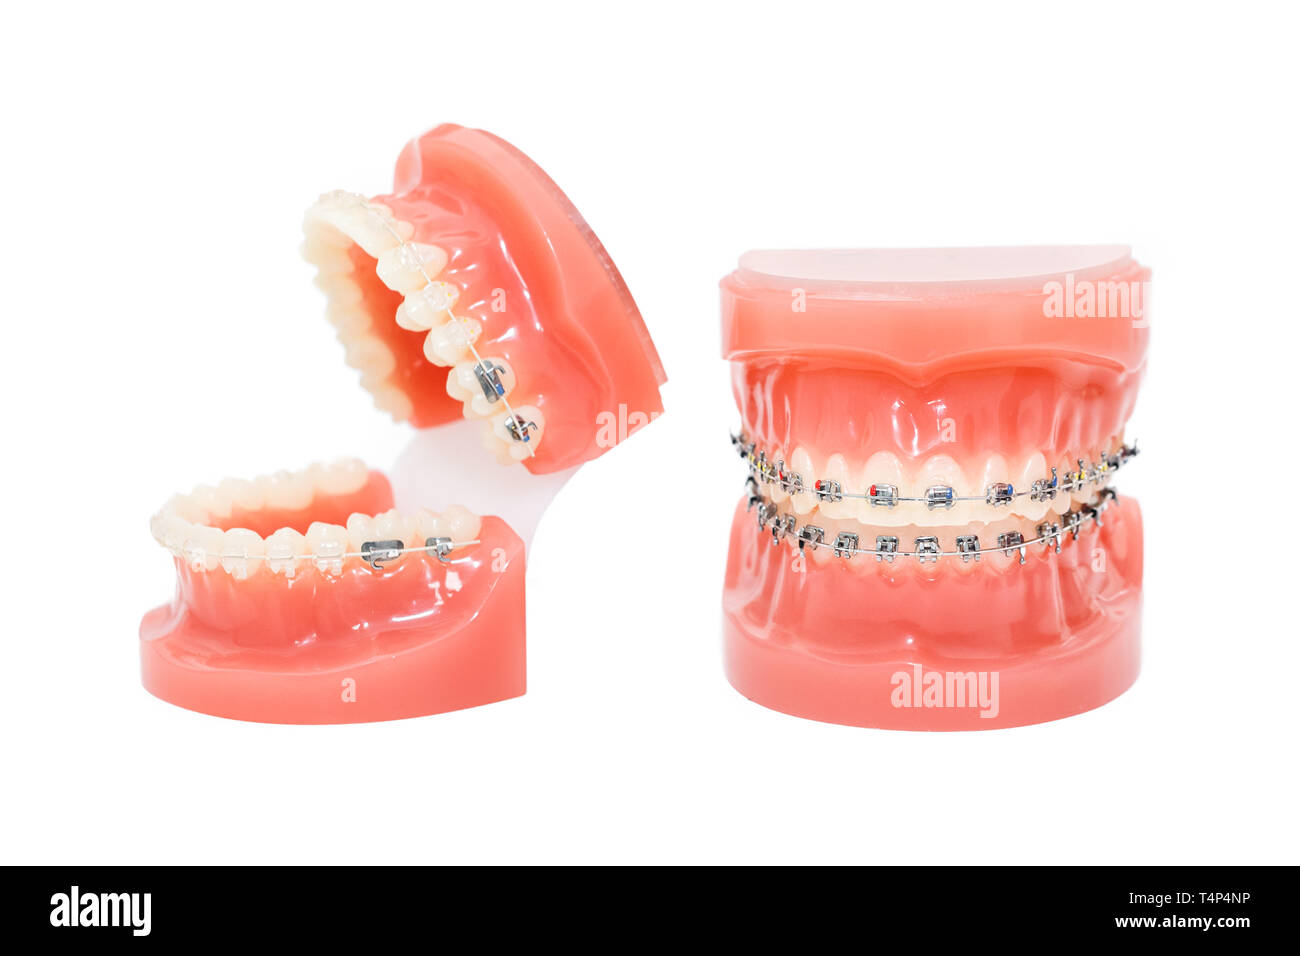 Modèle de dent dentaire avec support/modèle d'enseignement orthodontique  avec Tubes buccaux/modèle de dent de pratique orthodontique avec support 1  pièce - AliExpress